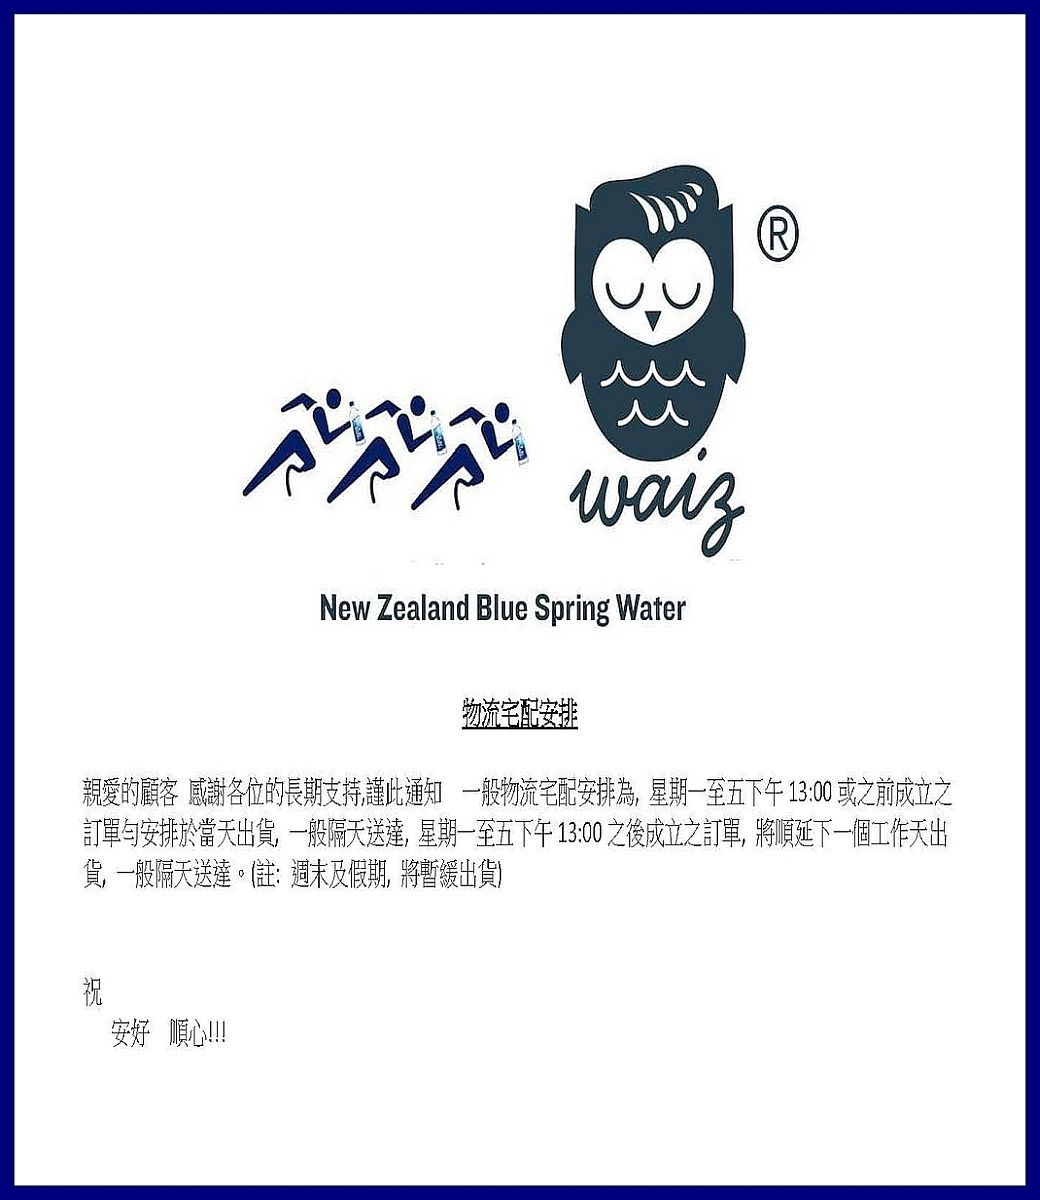 New Zealand Blue Spring Water(R)物流宅配安排親愛的顧客 感謝各位的長期支持謹此通知 一般物流宅配安排為,星期一至五下午13:00 或之前成立之訂單安排於當天出貨,一般隔天送達,星期一至五下午13:00之後成立之訂單,將順延下一個工作天出貨,一般隔天送達。(註:週末及假期,將暫緩出貨)祝安好 順心!!!